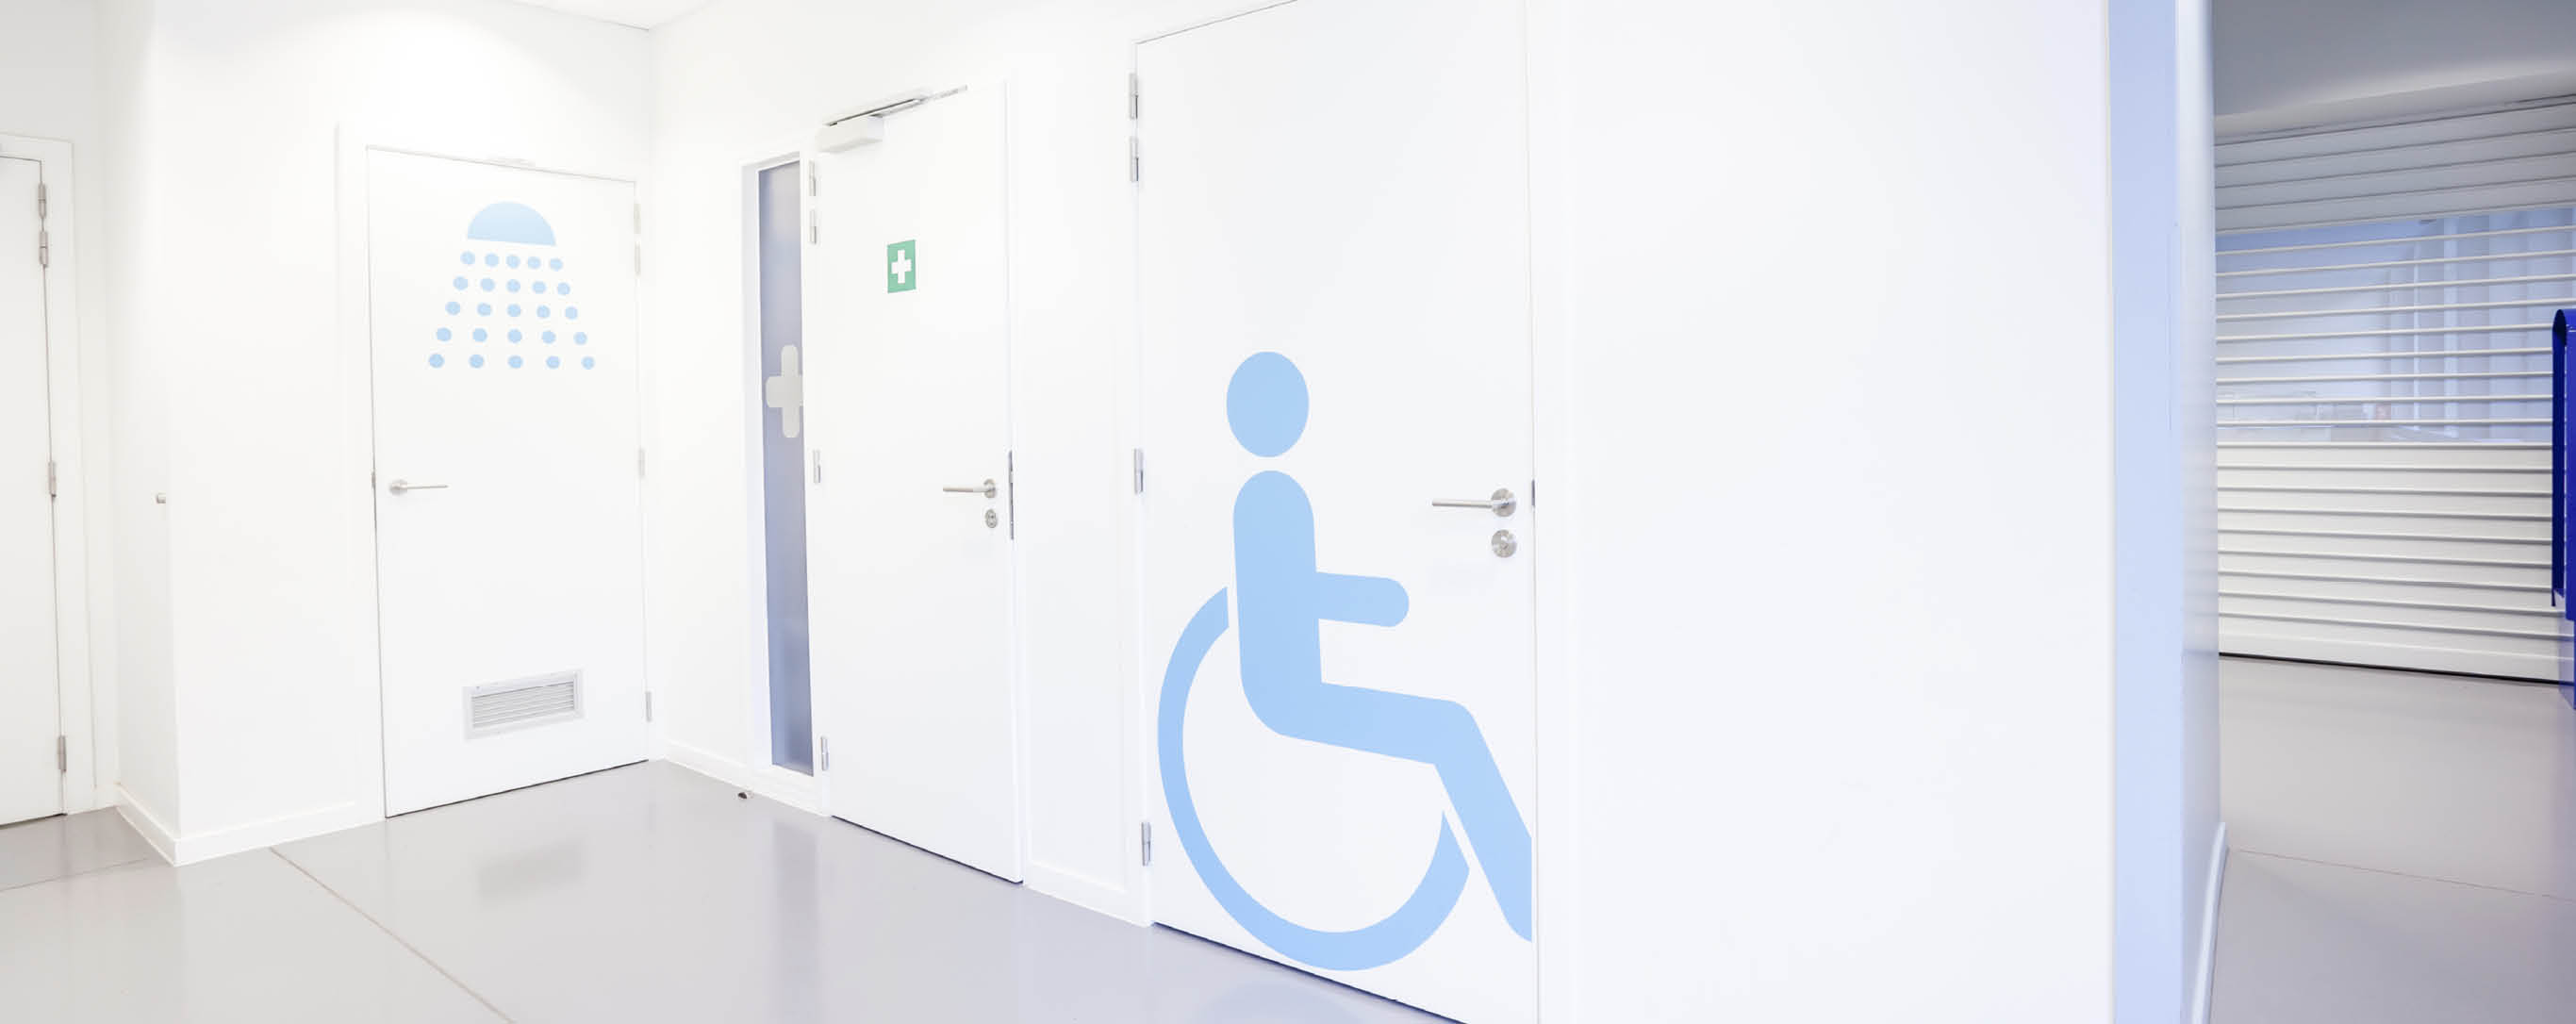 Flur mit weißen Türen und blauem Strichmännchen im Rollstuhl auf einer Tür abgebildet